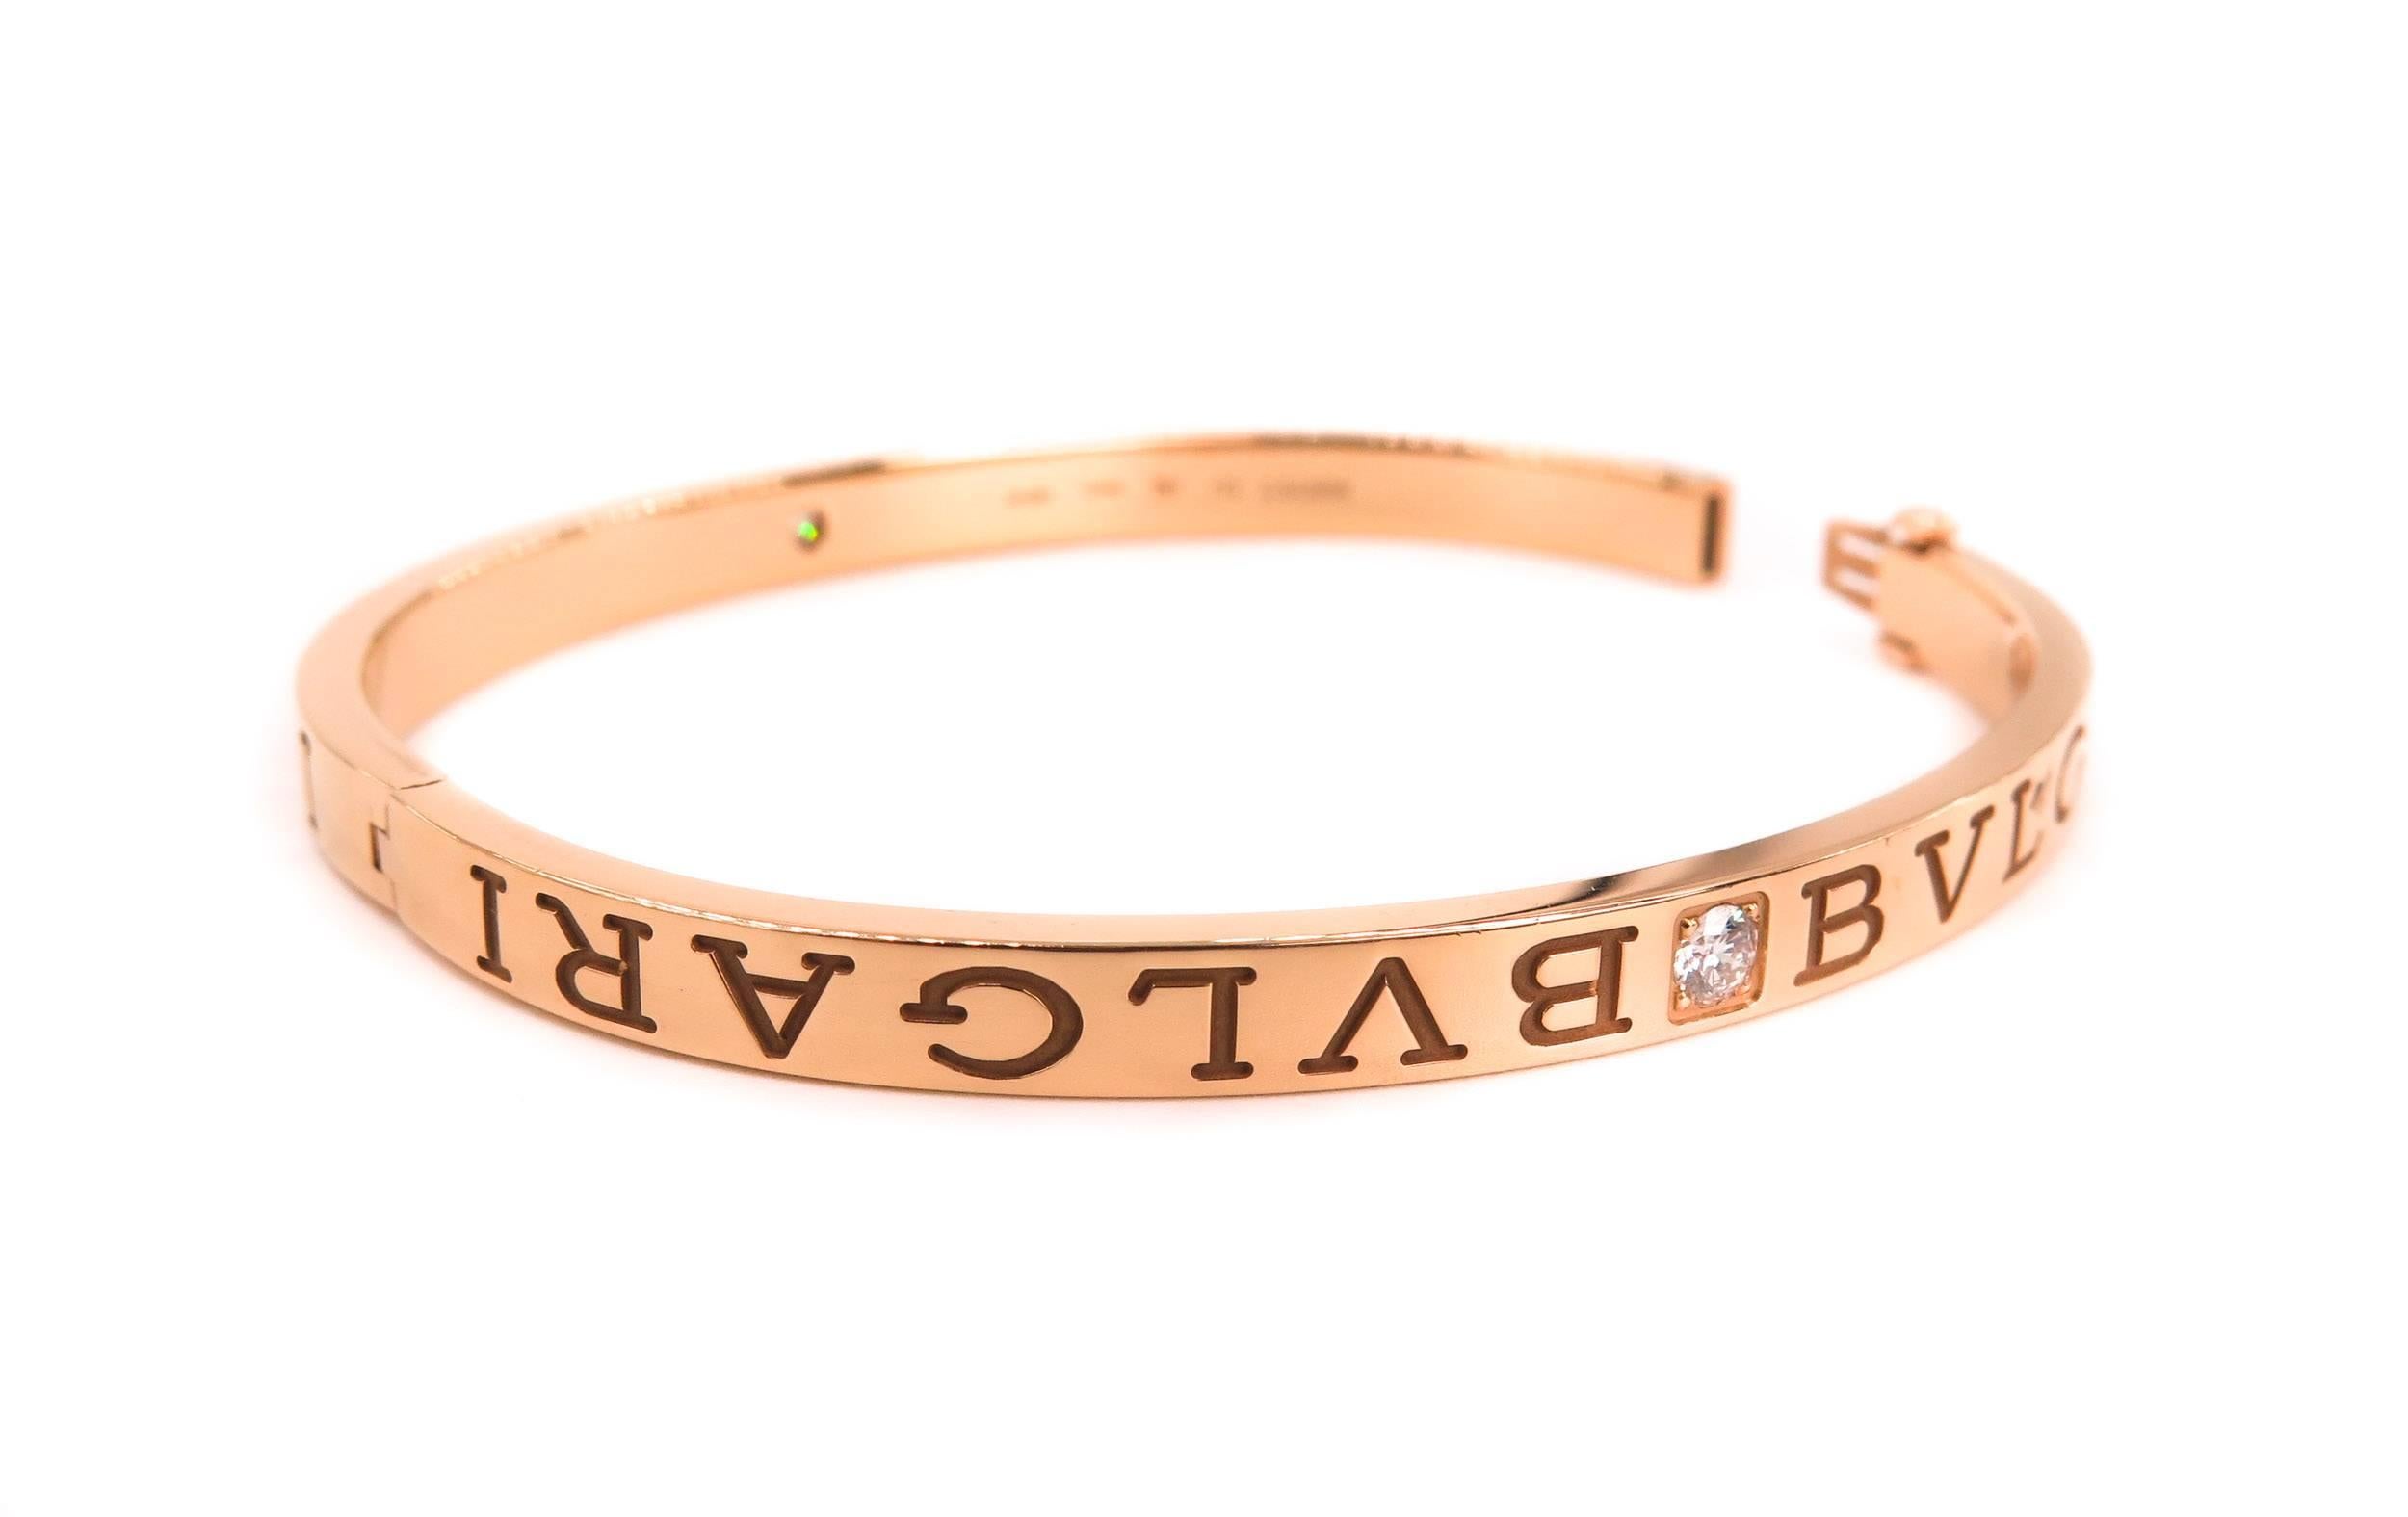 bvlgari rose gold bracelet